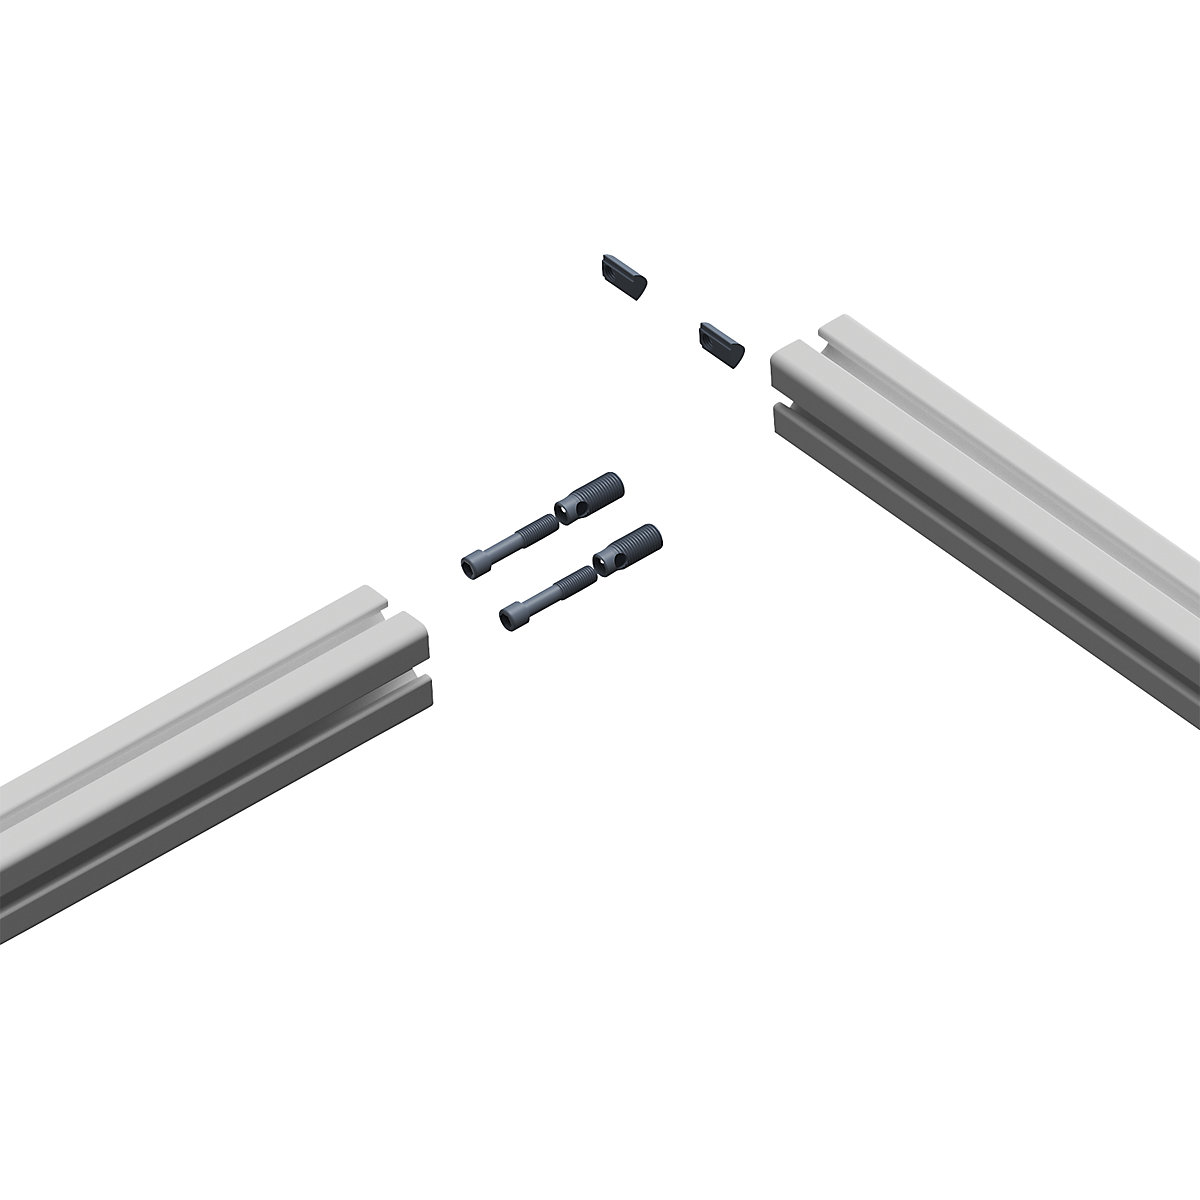 workalu® aluminium workbench, base frame double sided – bedrunka hirth (Product illustration 2)-1